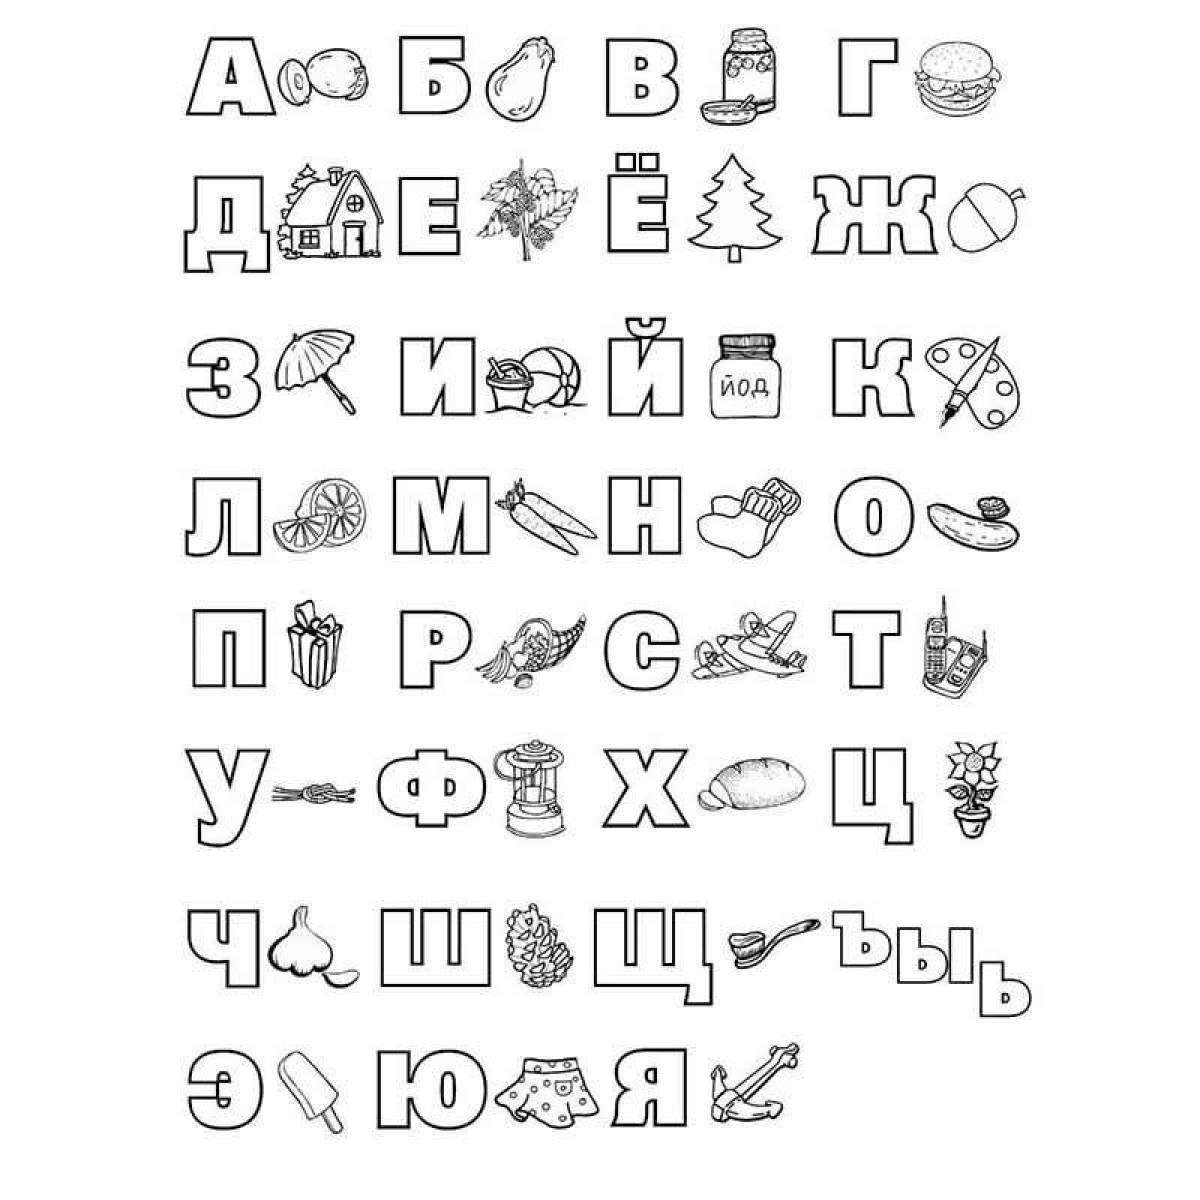 Colour-explosion alphabet letters